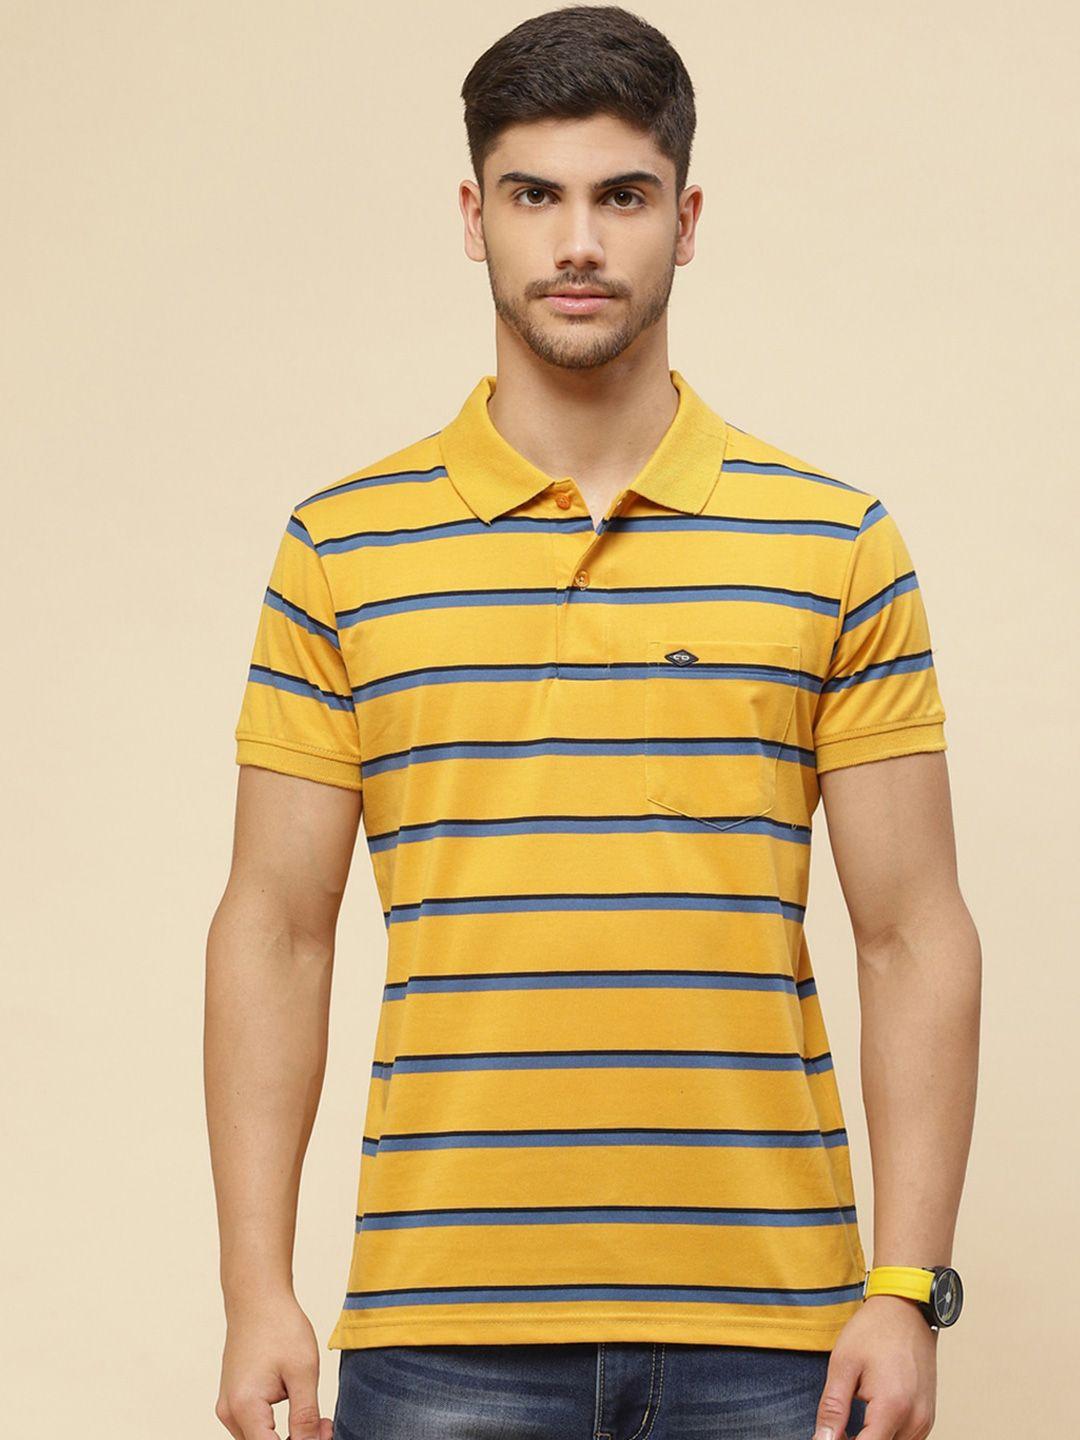 cloak & decker by monte carlo striped cotton polo t-shirt